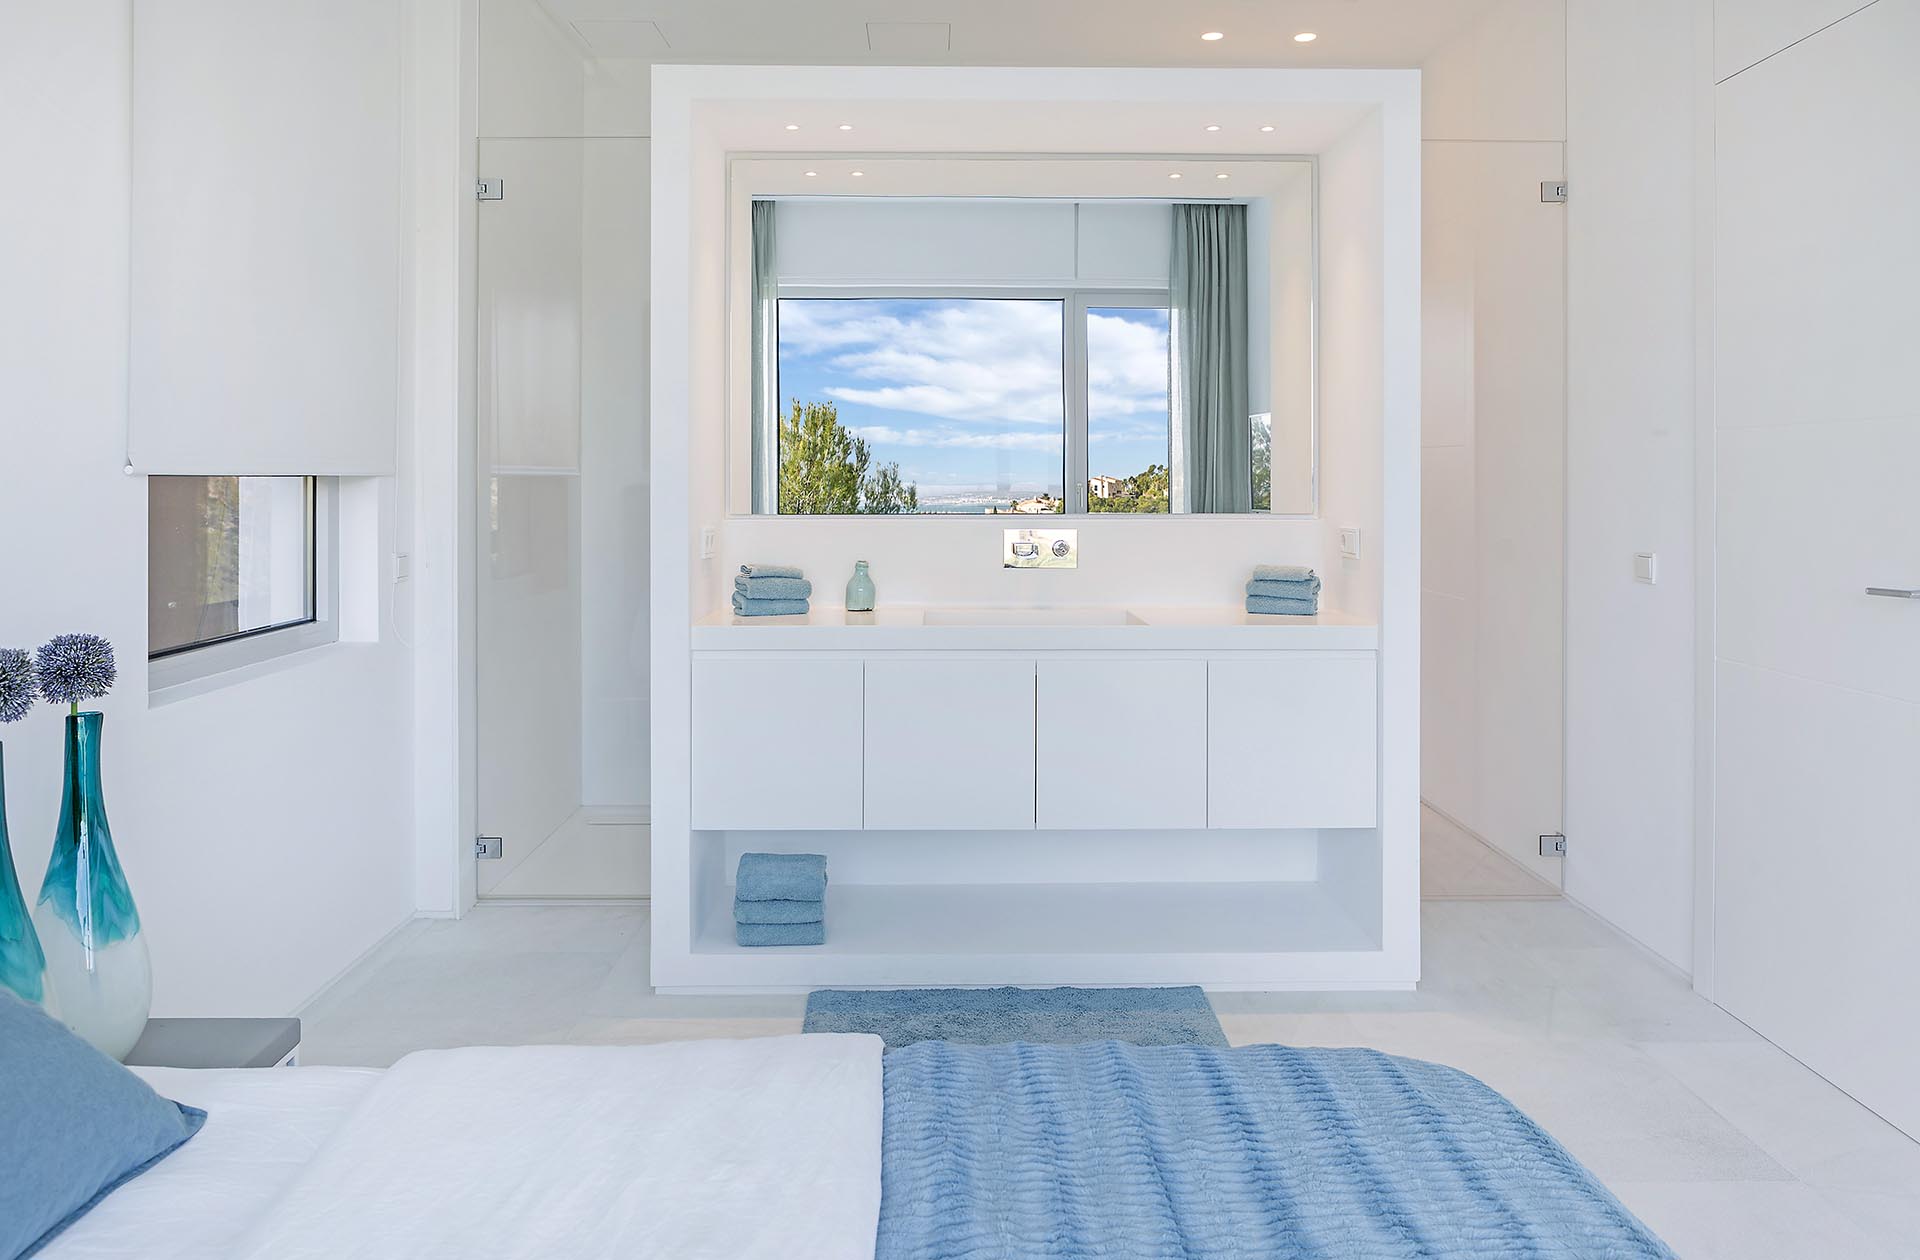 Traumhafte moderne Villa in Costa den Blanes - Badbereich im Schlafzimmer